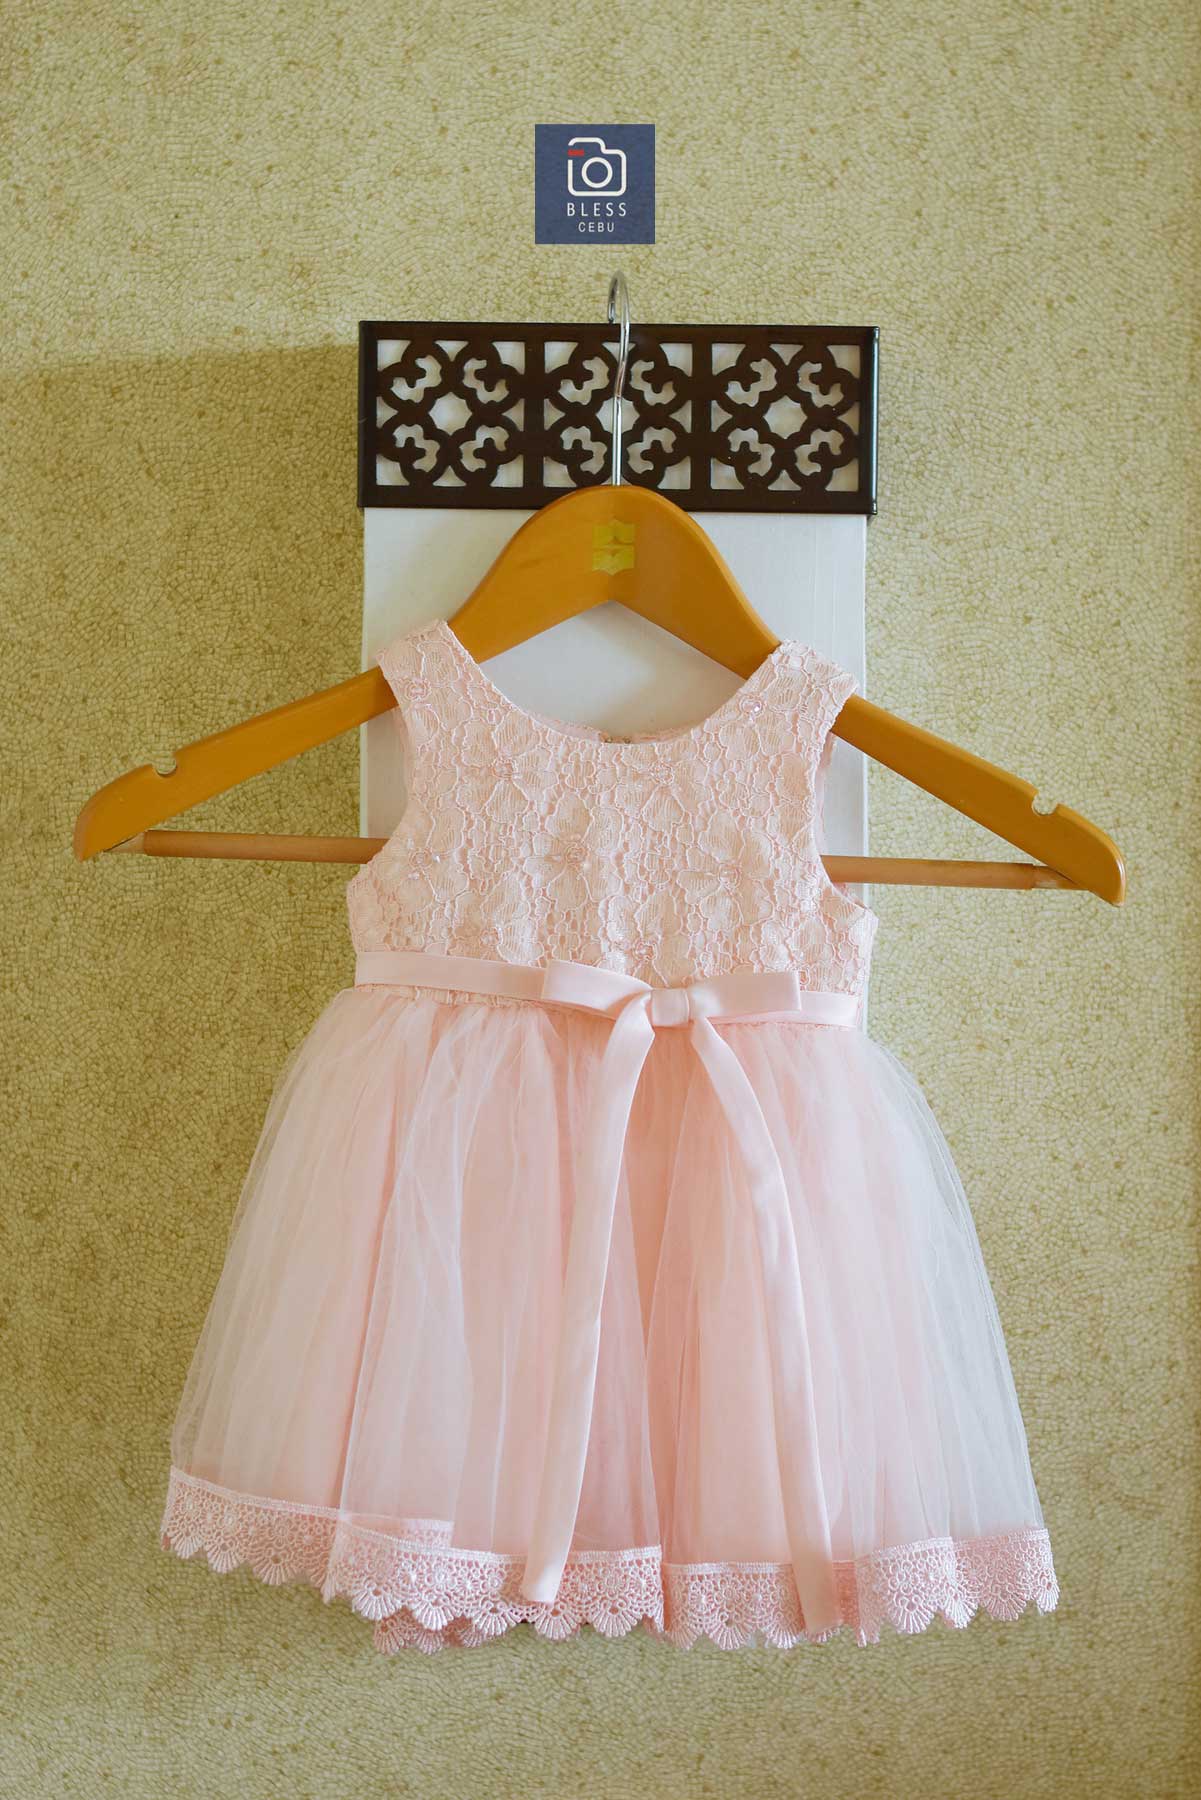 Yちゃんのピンクドレス